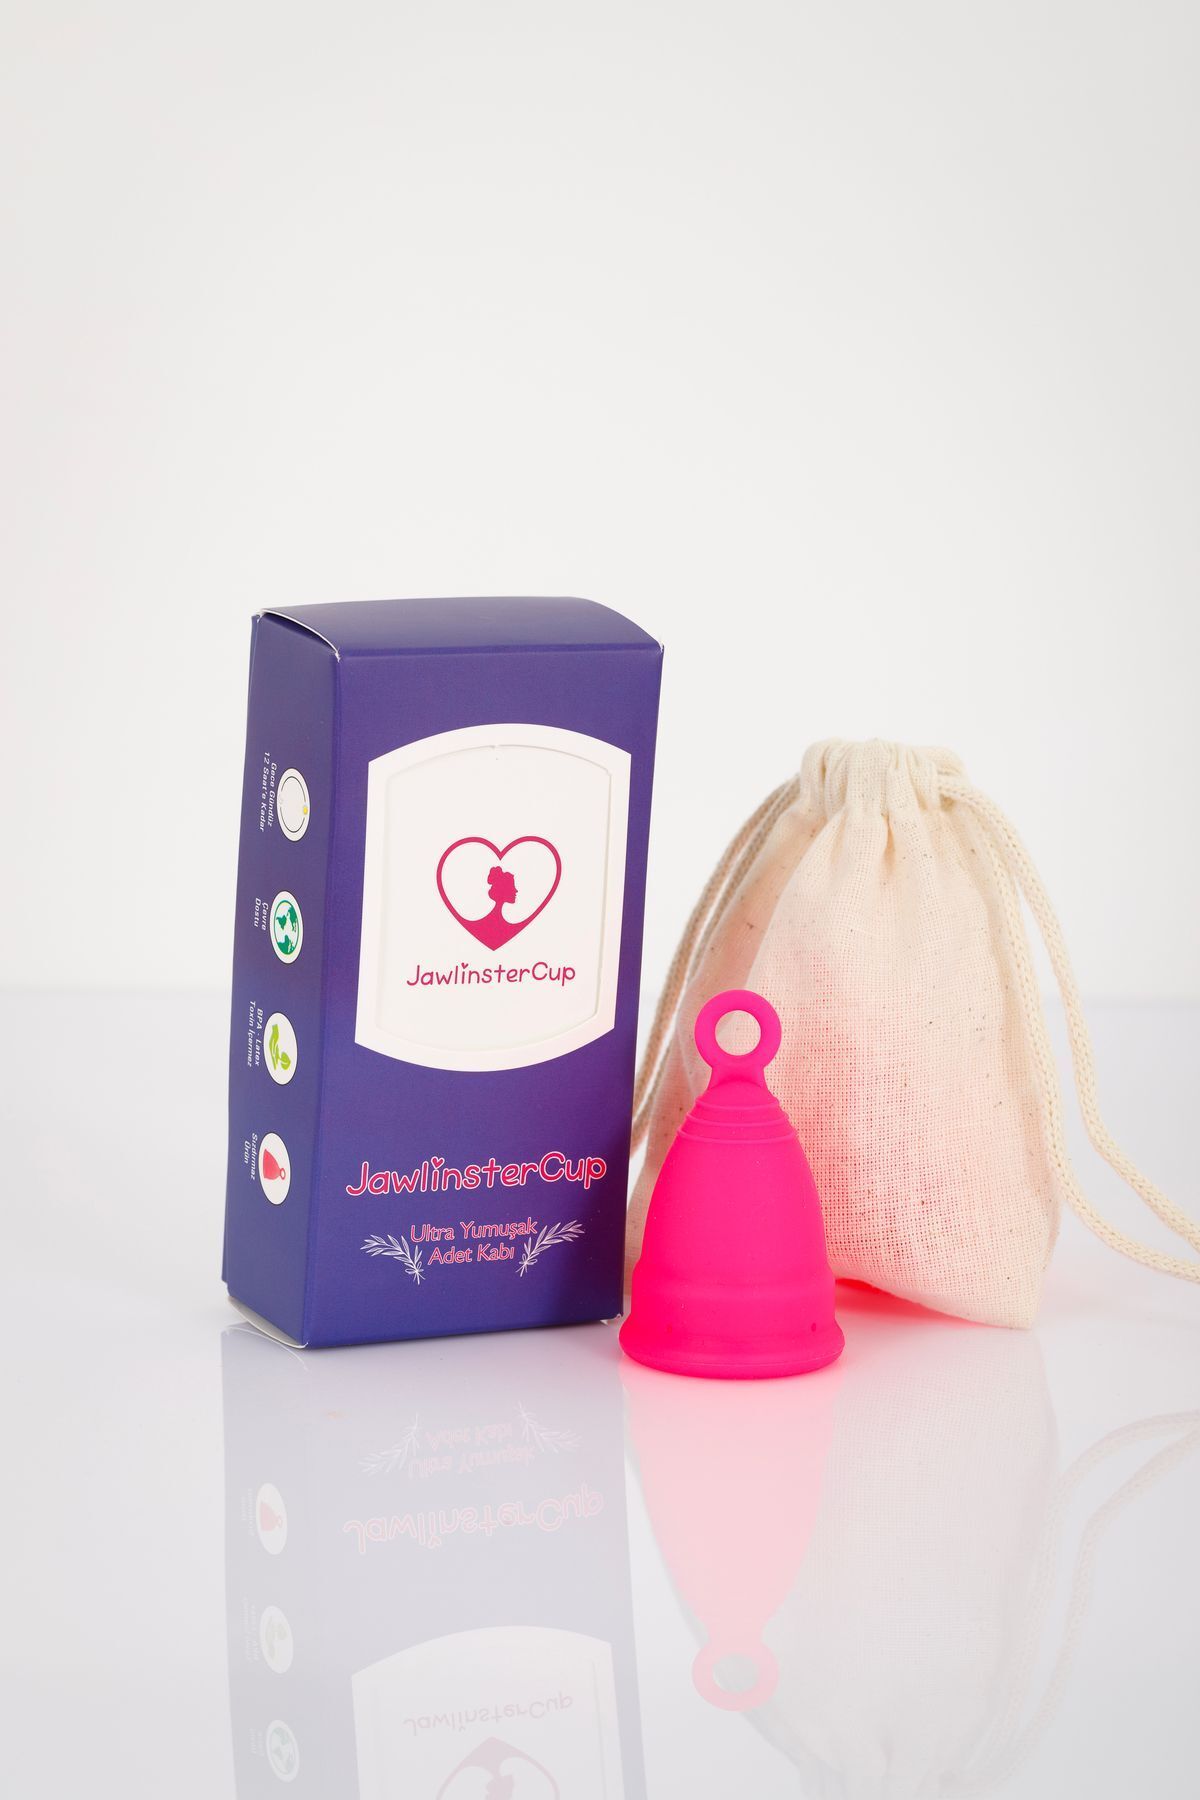 jawlinster Adet Kabı Regl Kabı Menstrual Cup Small Beden Rose Medikal Sınıf Silikon Adet Kabı